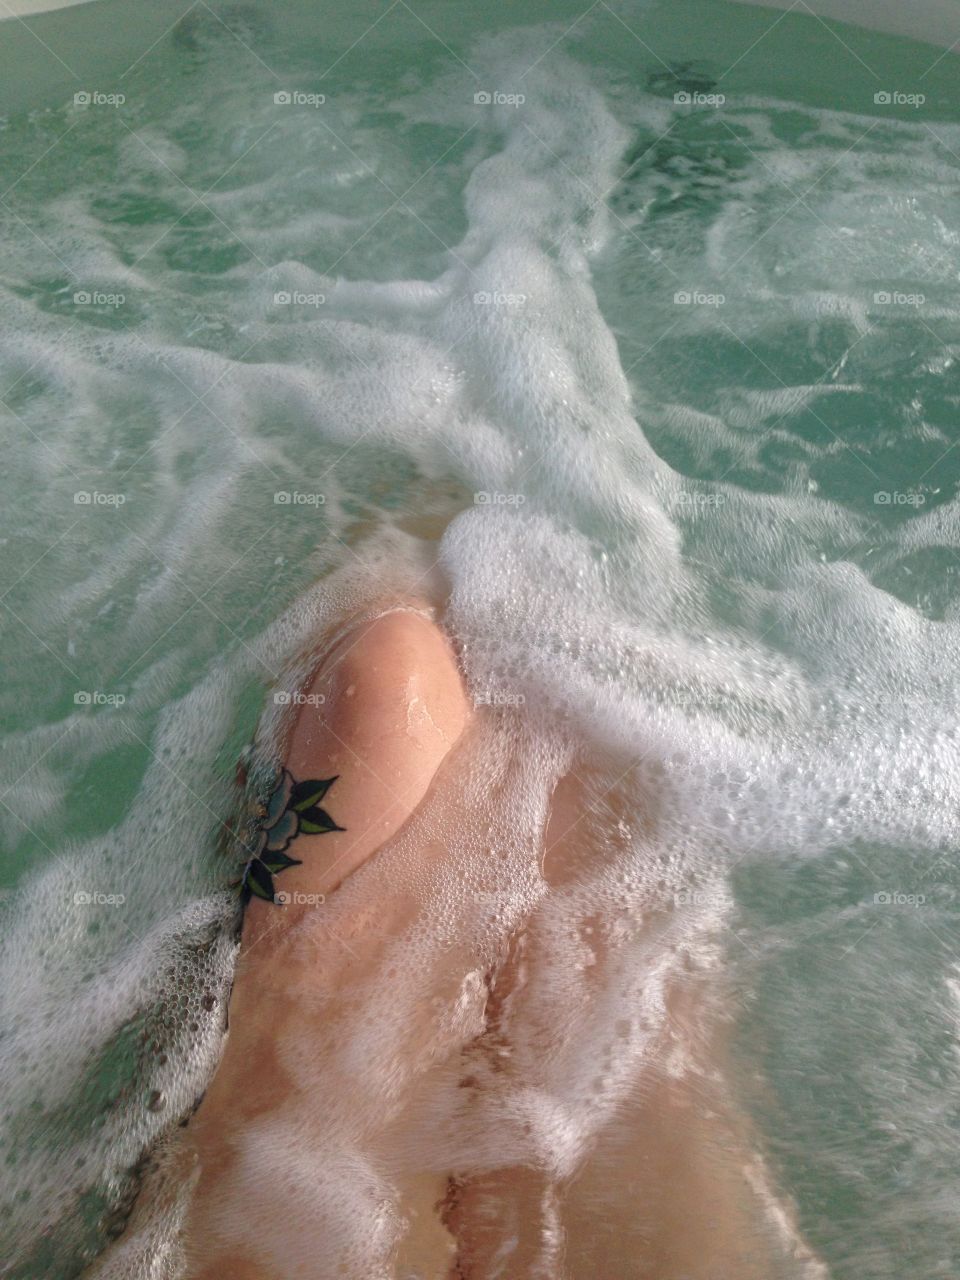 Hot tub days. 